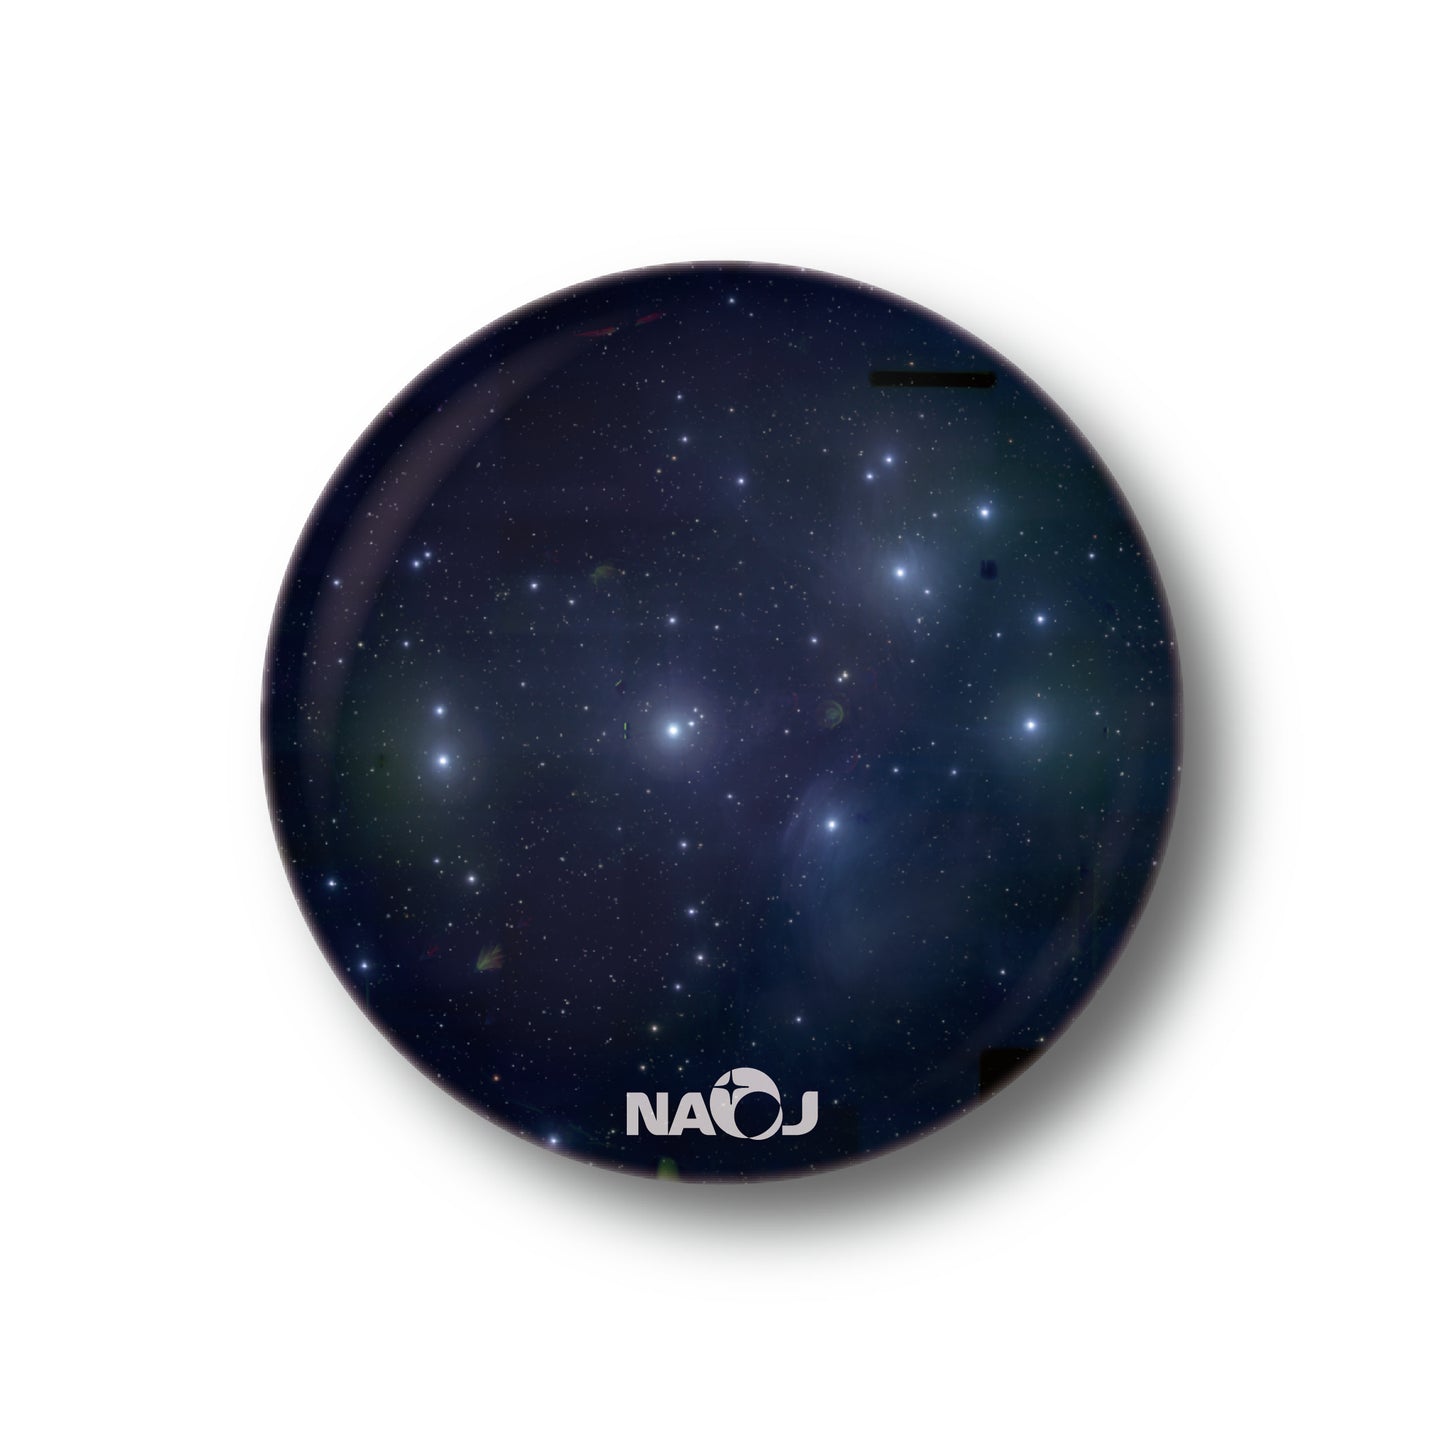 国立天文台  すばる望遠鏡HSCで見る宇宙  缶バッジ [小] プレアデス星団 (M45、和名「すばる」) 01